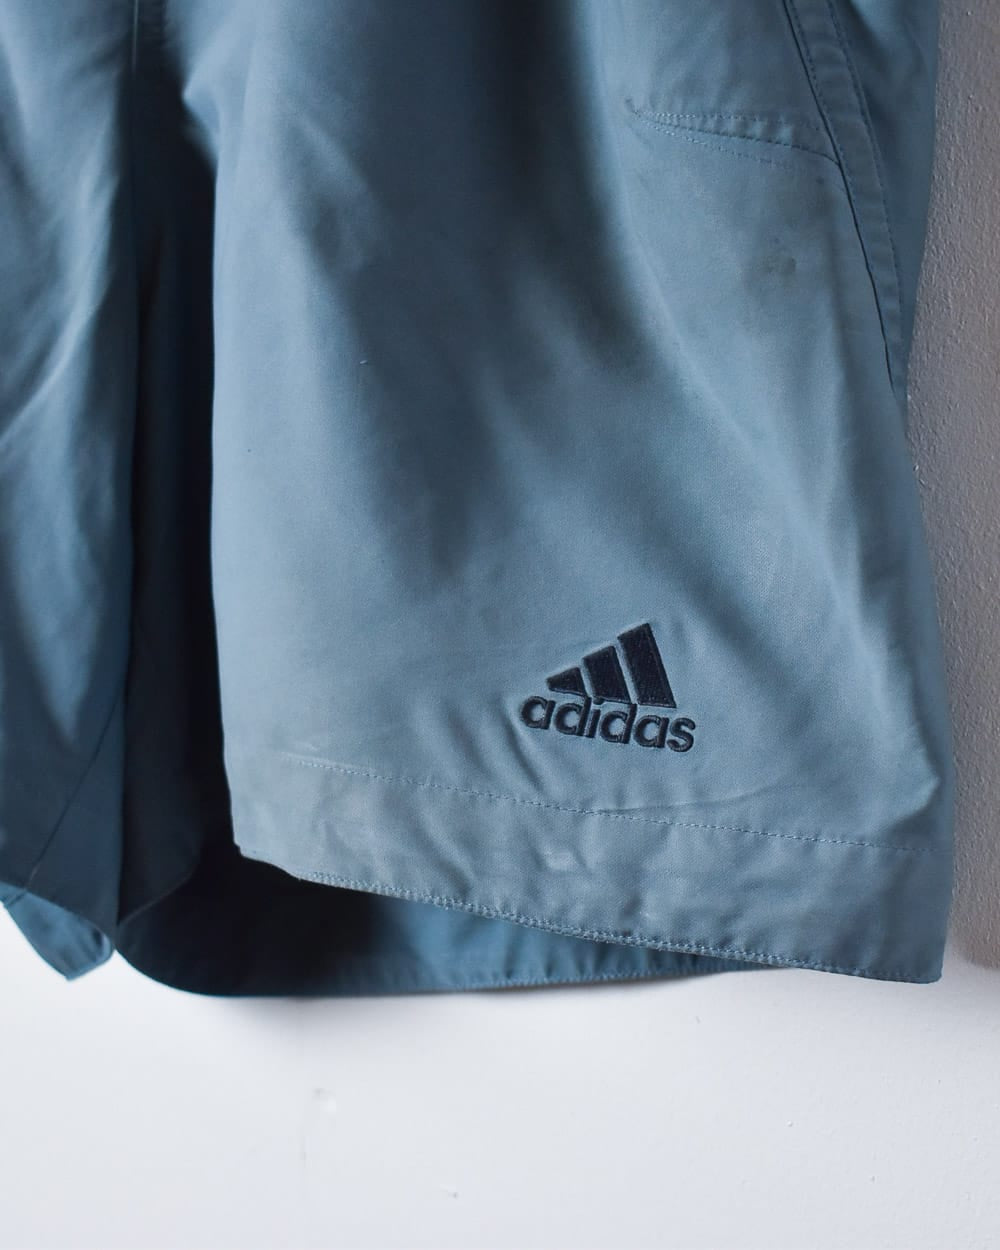 Blue Adidas Shorts - X-Large